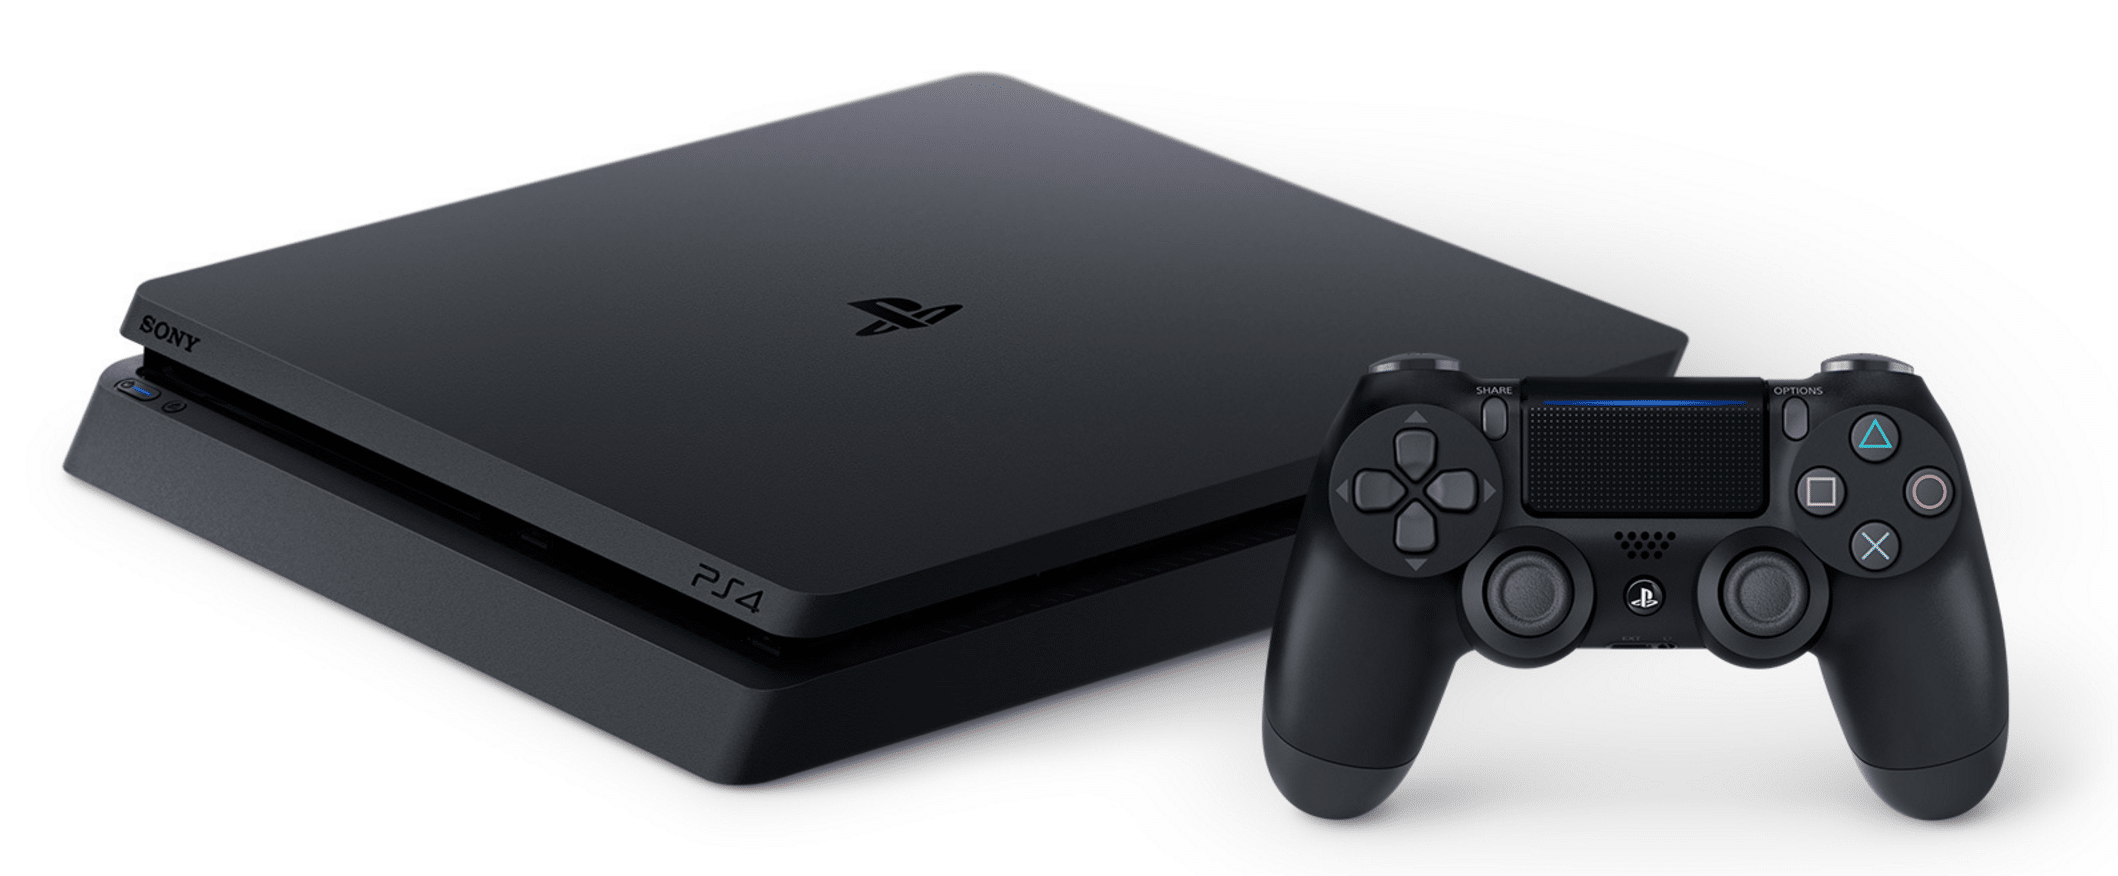 Confirmado! Sony revela versión SuperSlim de PS4